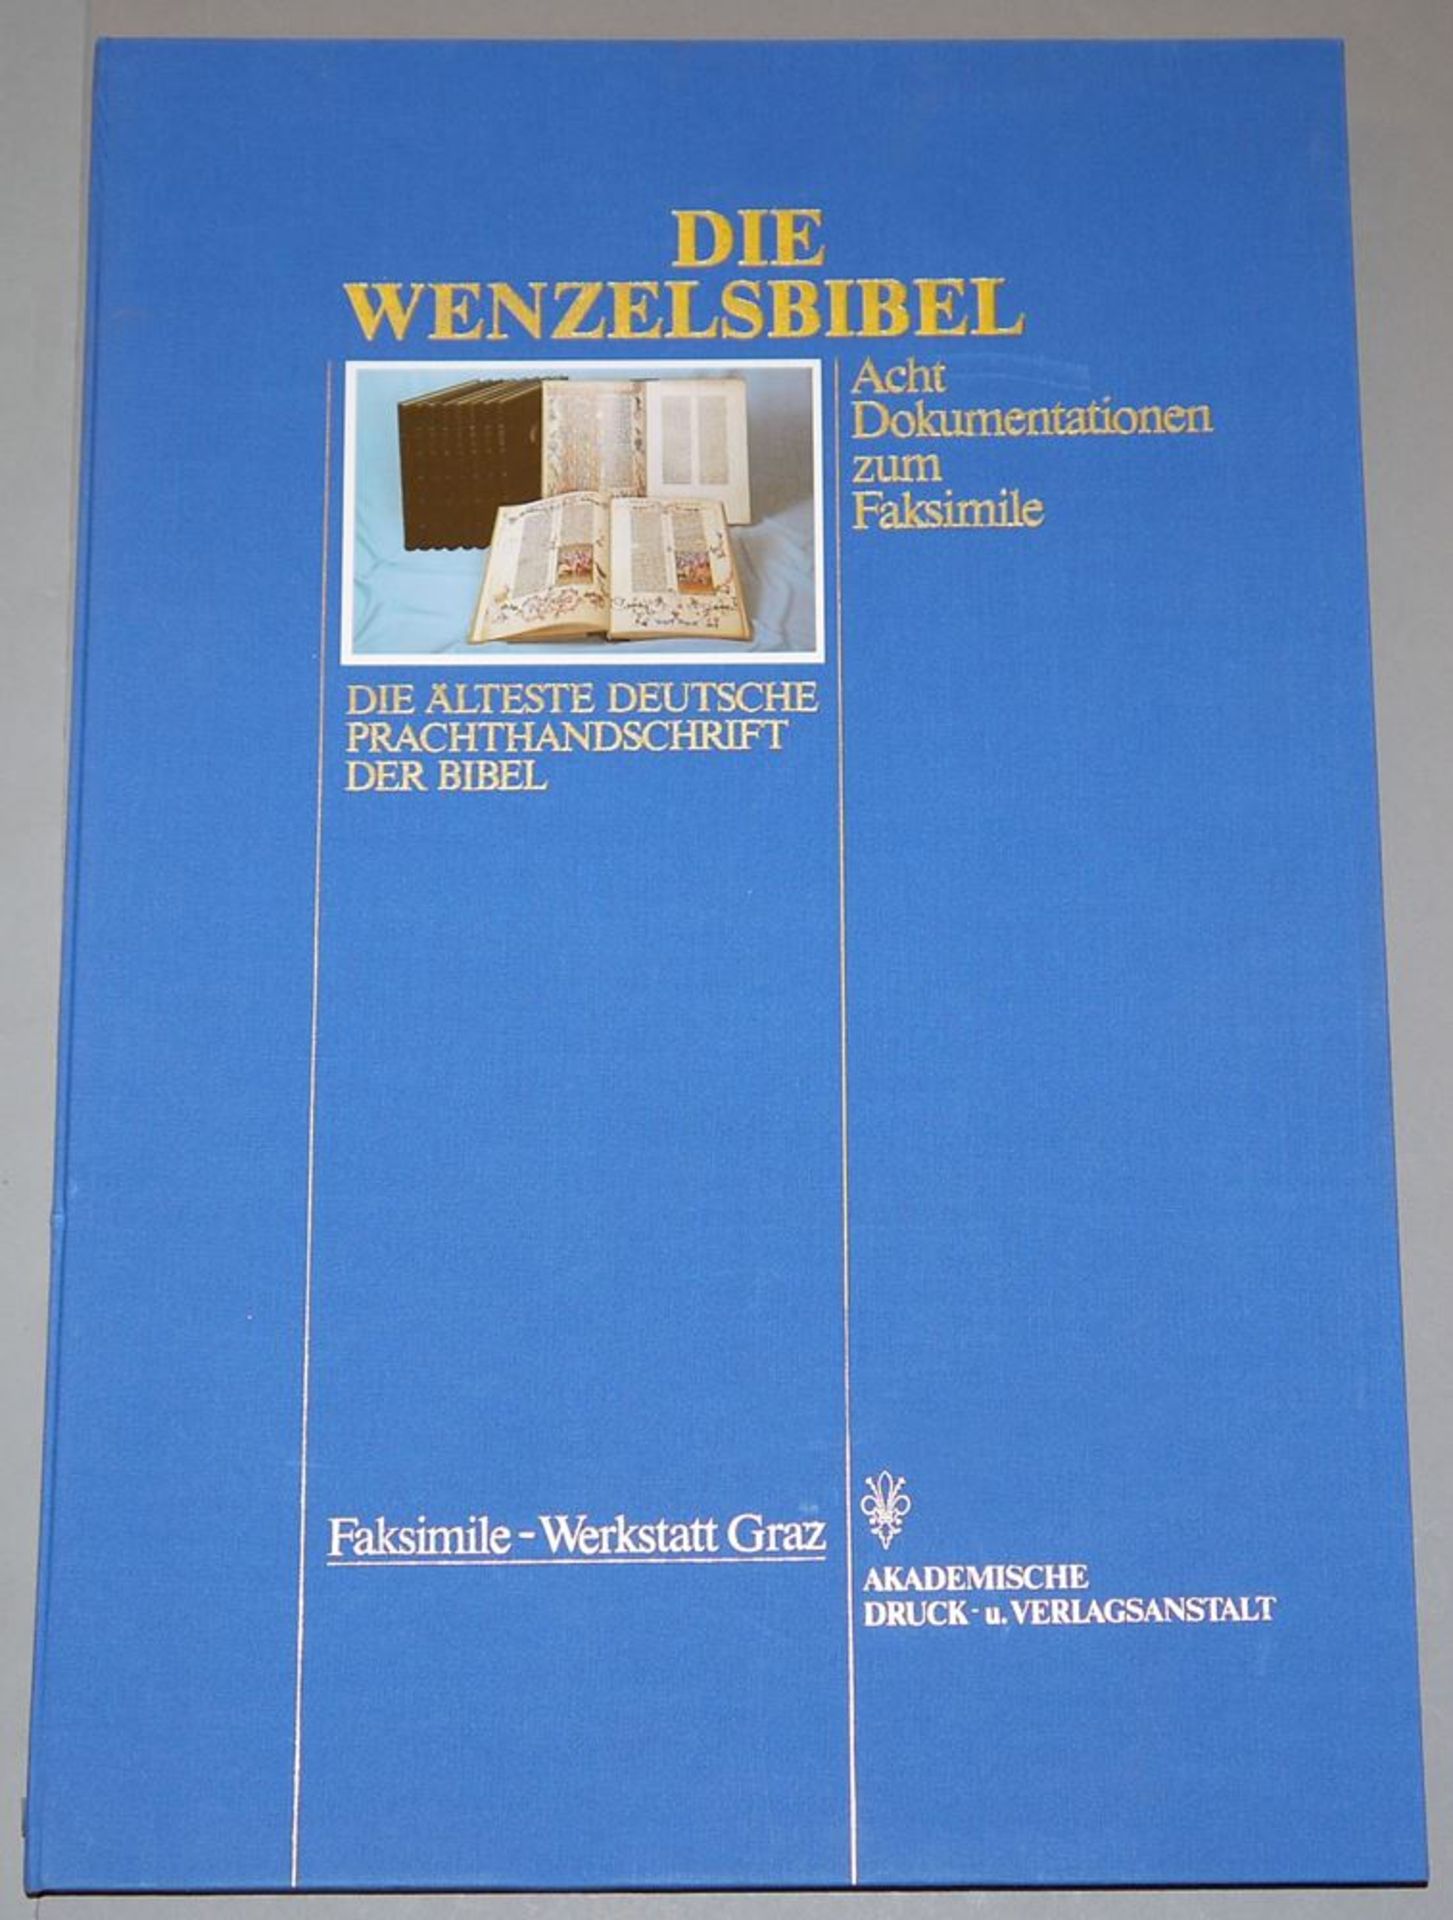 Die Wenzelsbibel, acht Dokumentationsmappen zum Faksimile, Bd. 1-8, Graz 1987